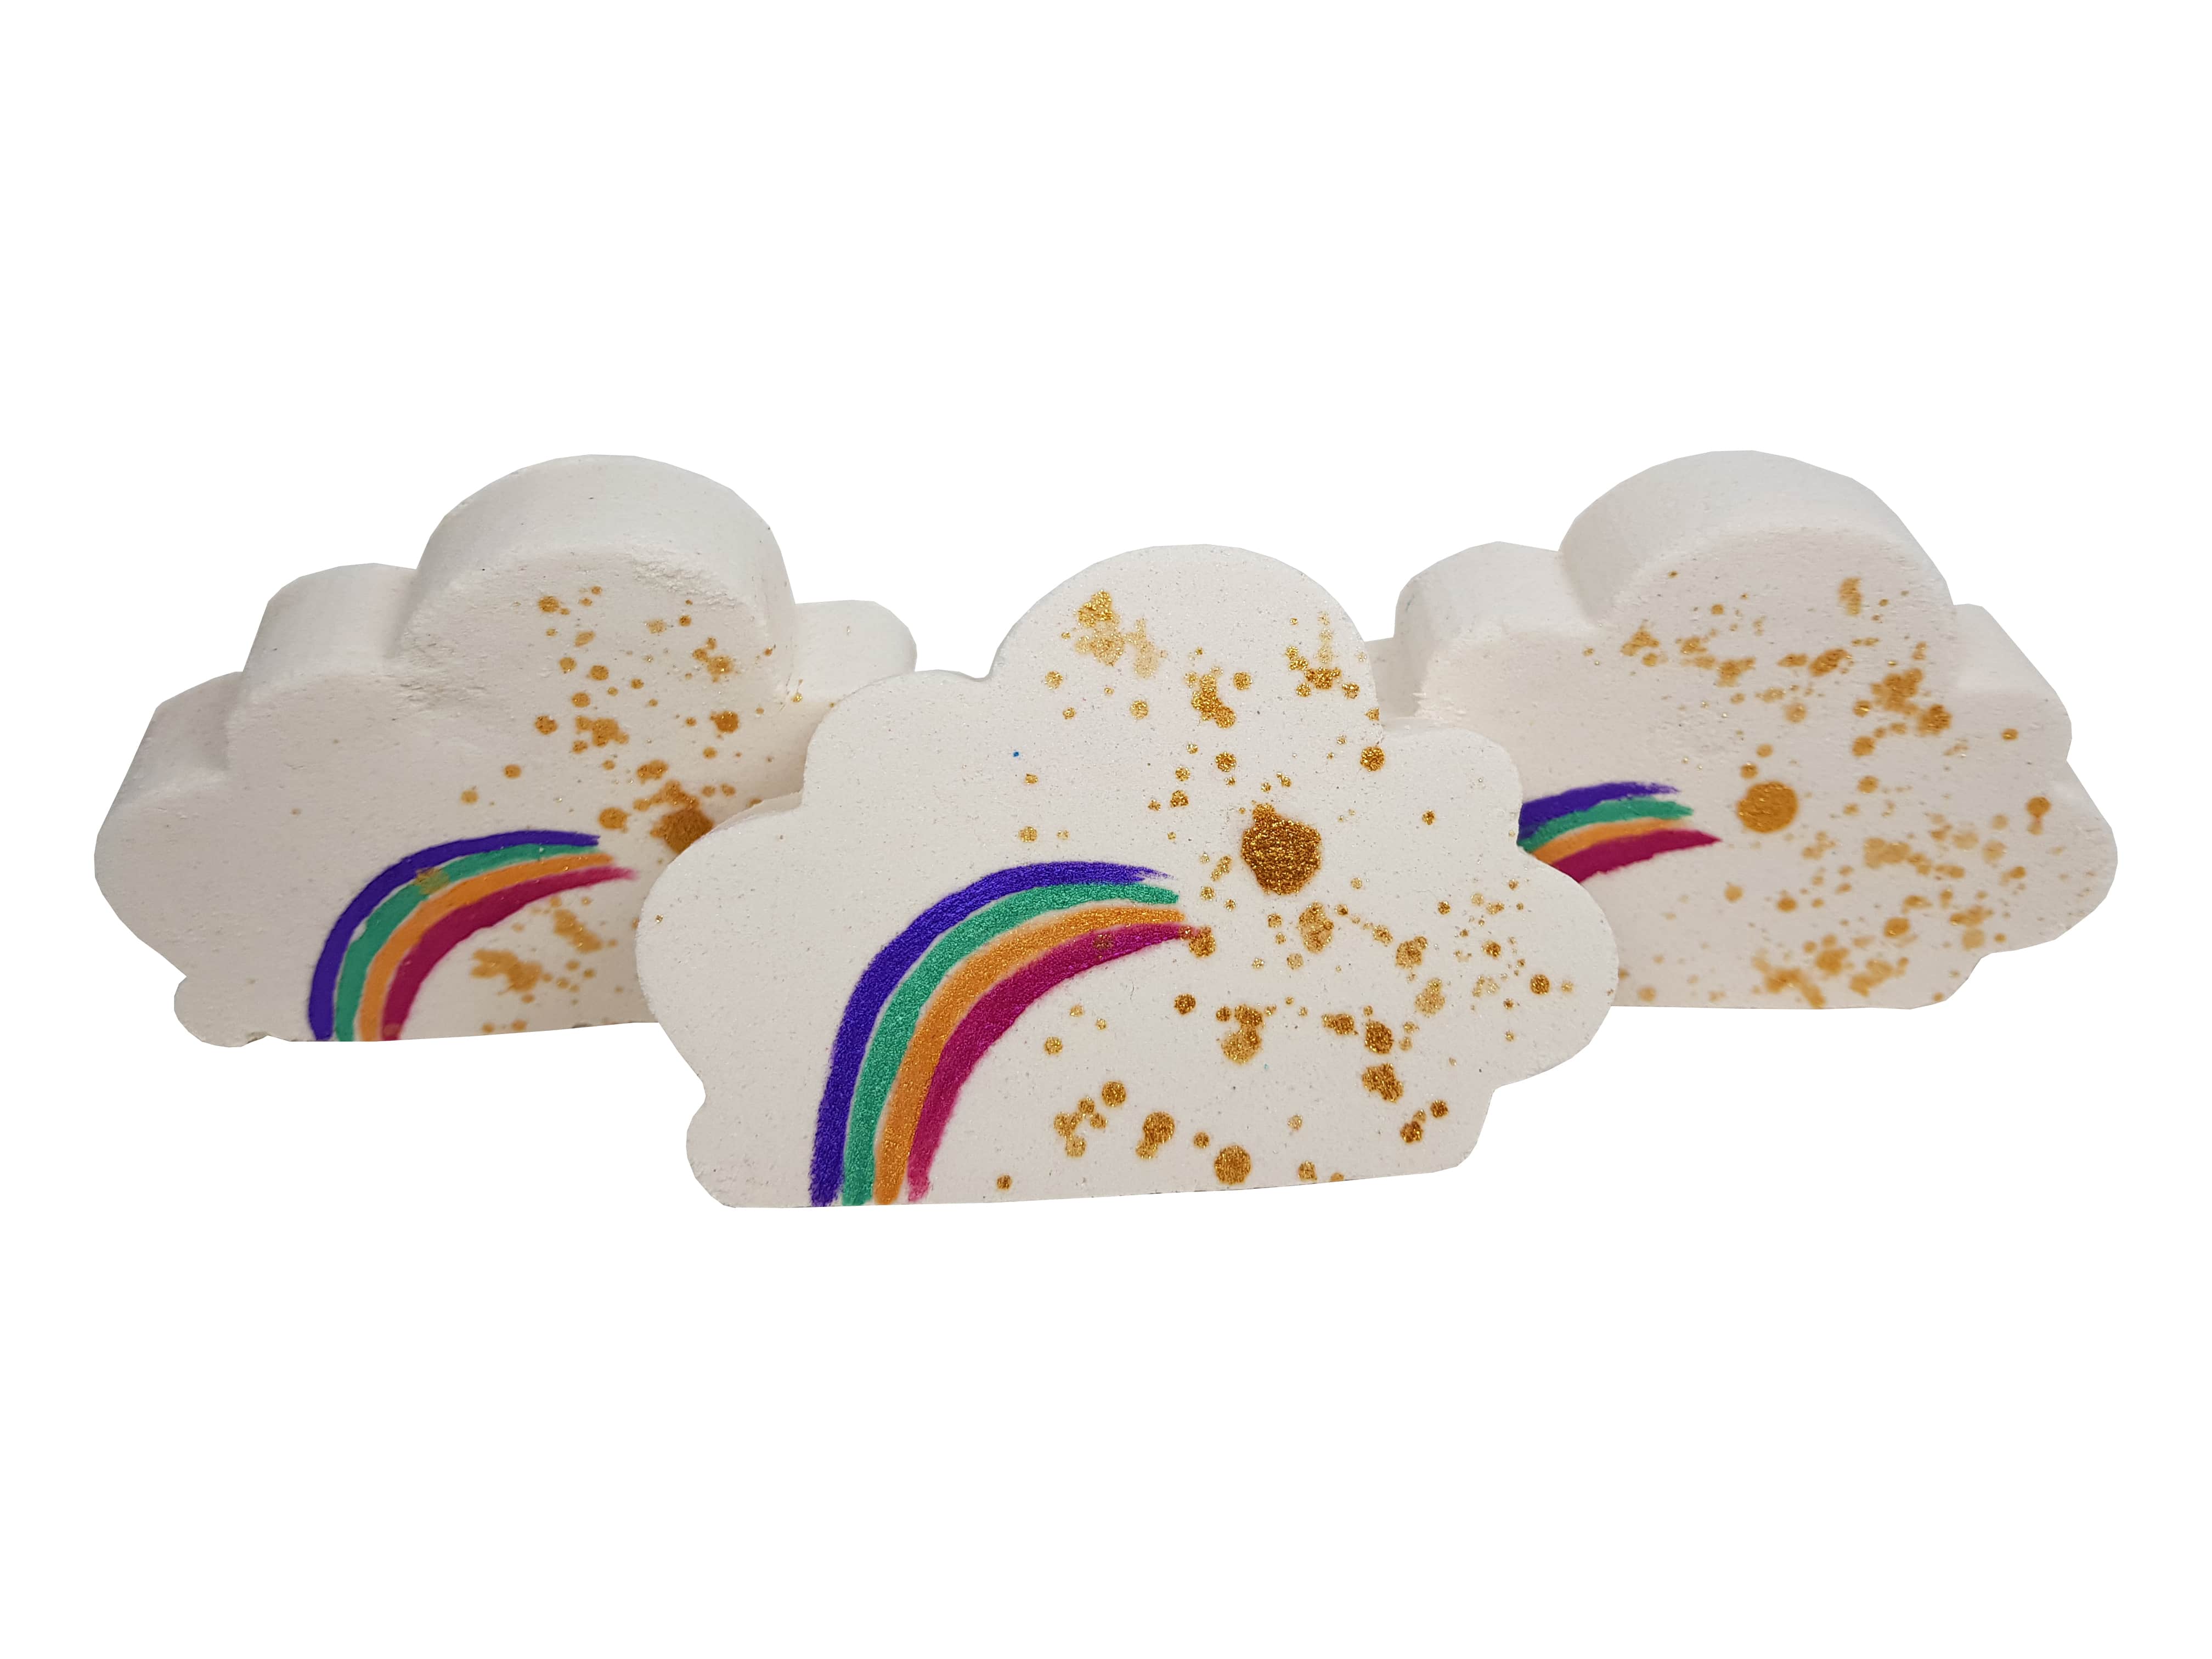 Bombas de baño Rainbow Cloud al por mayor: diversión que cambia de color para niños